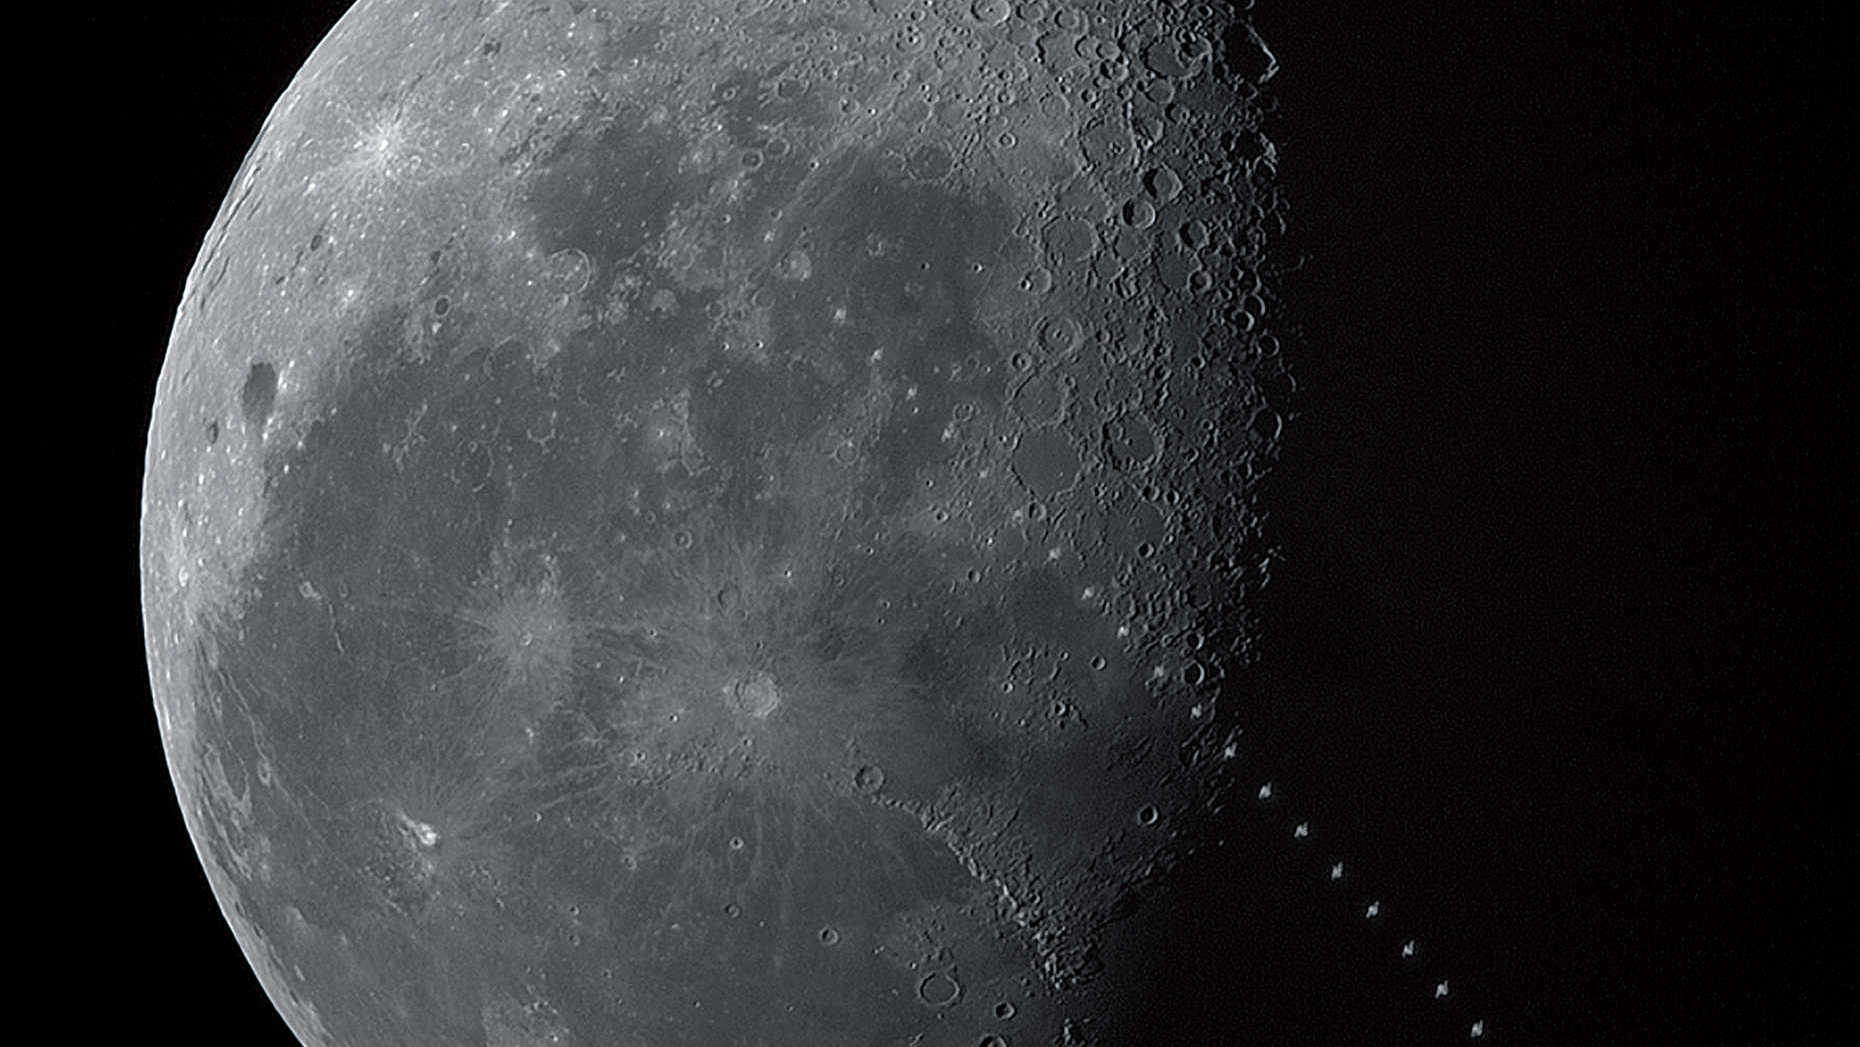 În primele ore ale zilei de 17 mai 2017, într-o dimineață senină de început de vară deasupra orașului Todtnau din sudul Pădurii Negre, a fost fotografiat tranzitul Stației Spațiale Internaționale SSI în fața Lunii în descreștere. Tranzitul a avut loc la ora 8:05:49 CEST, când Luna se afla la 19,4 grade deasupra orizontului SSV. Distanța dintre SSI, cu o luminozitate de 2,m3, și locul de observare, a fost de 1016,7 kilometri, astfel încât tranzitul a durat 1,2 secunde, iar stația spațială a apărut corespunzător de mică. Imaginea este un montaj de 51 de imagini în Photoshop. U. Dittler